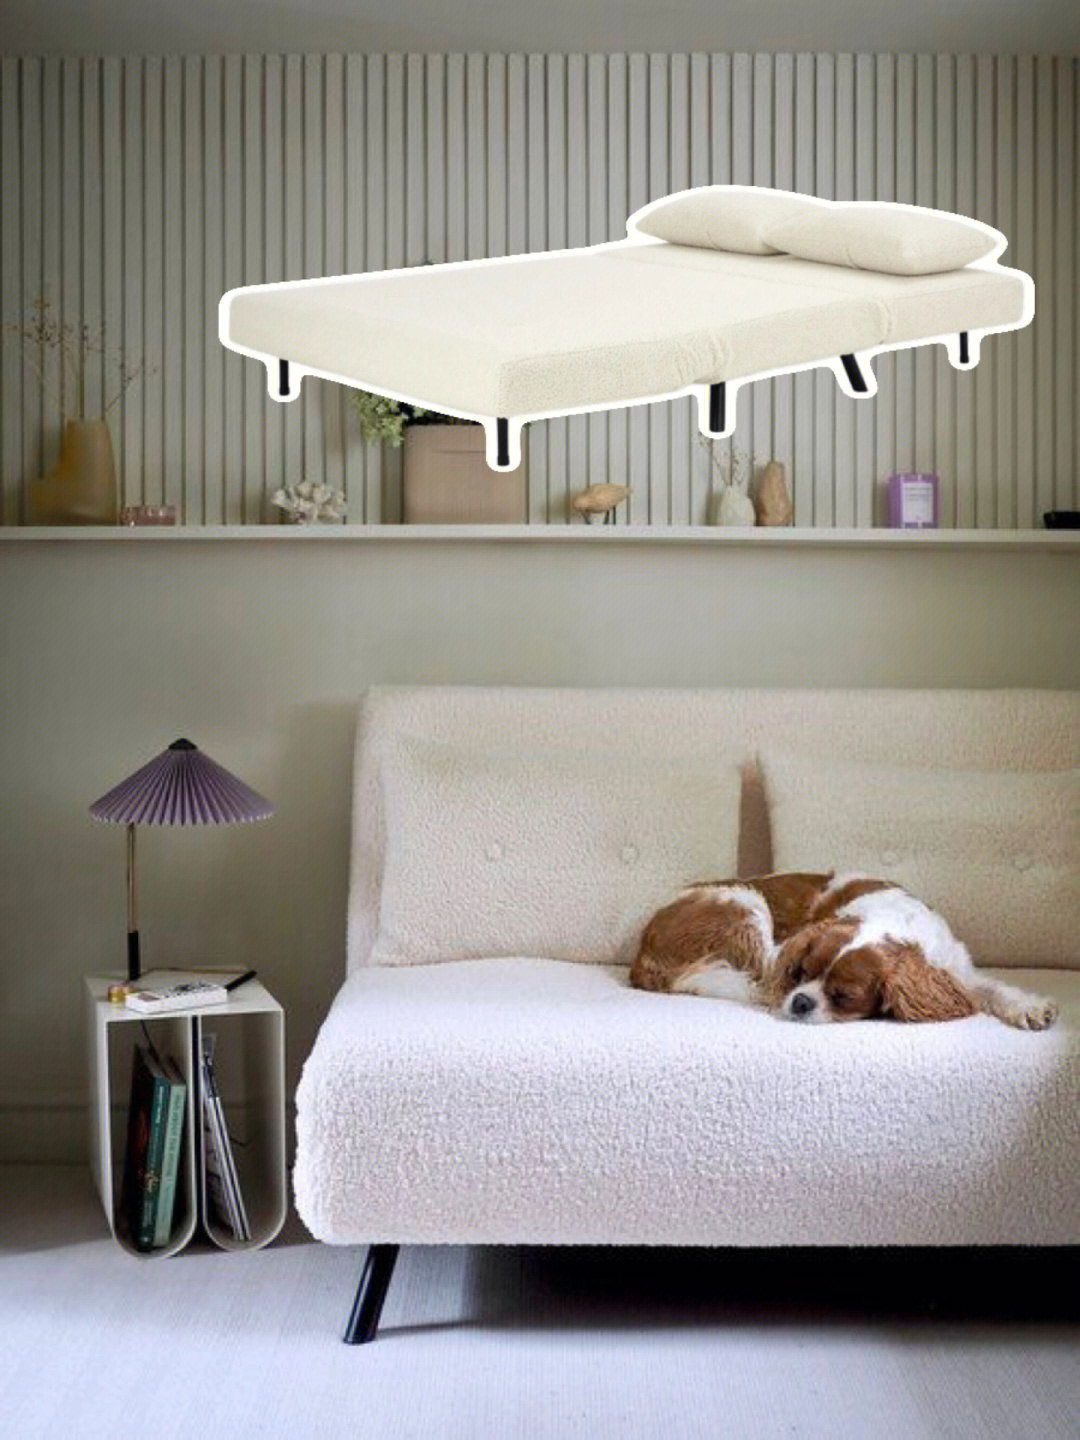 羊羔绒折叠沙发床既是沙发也是床